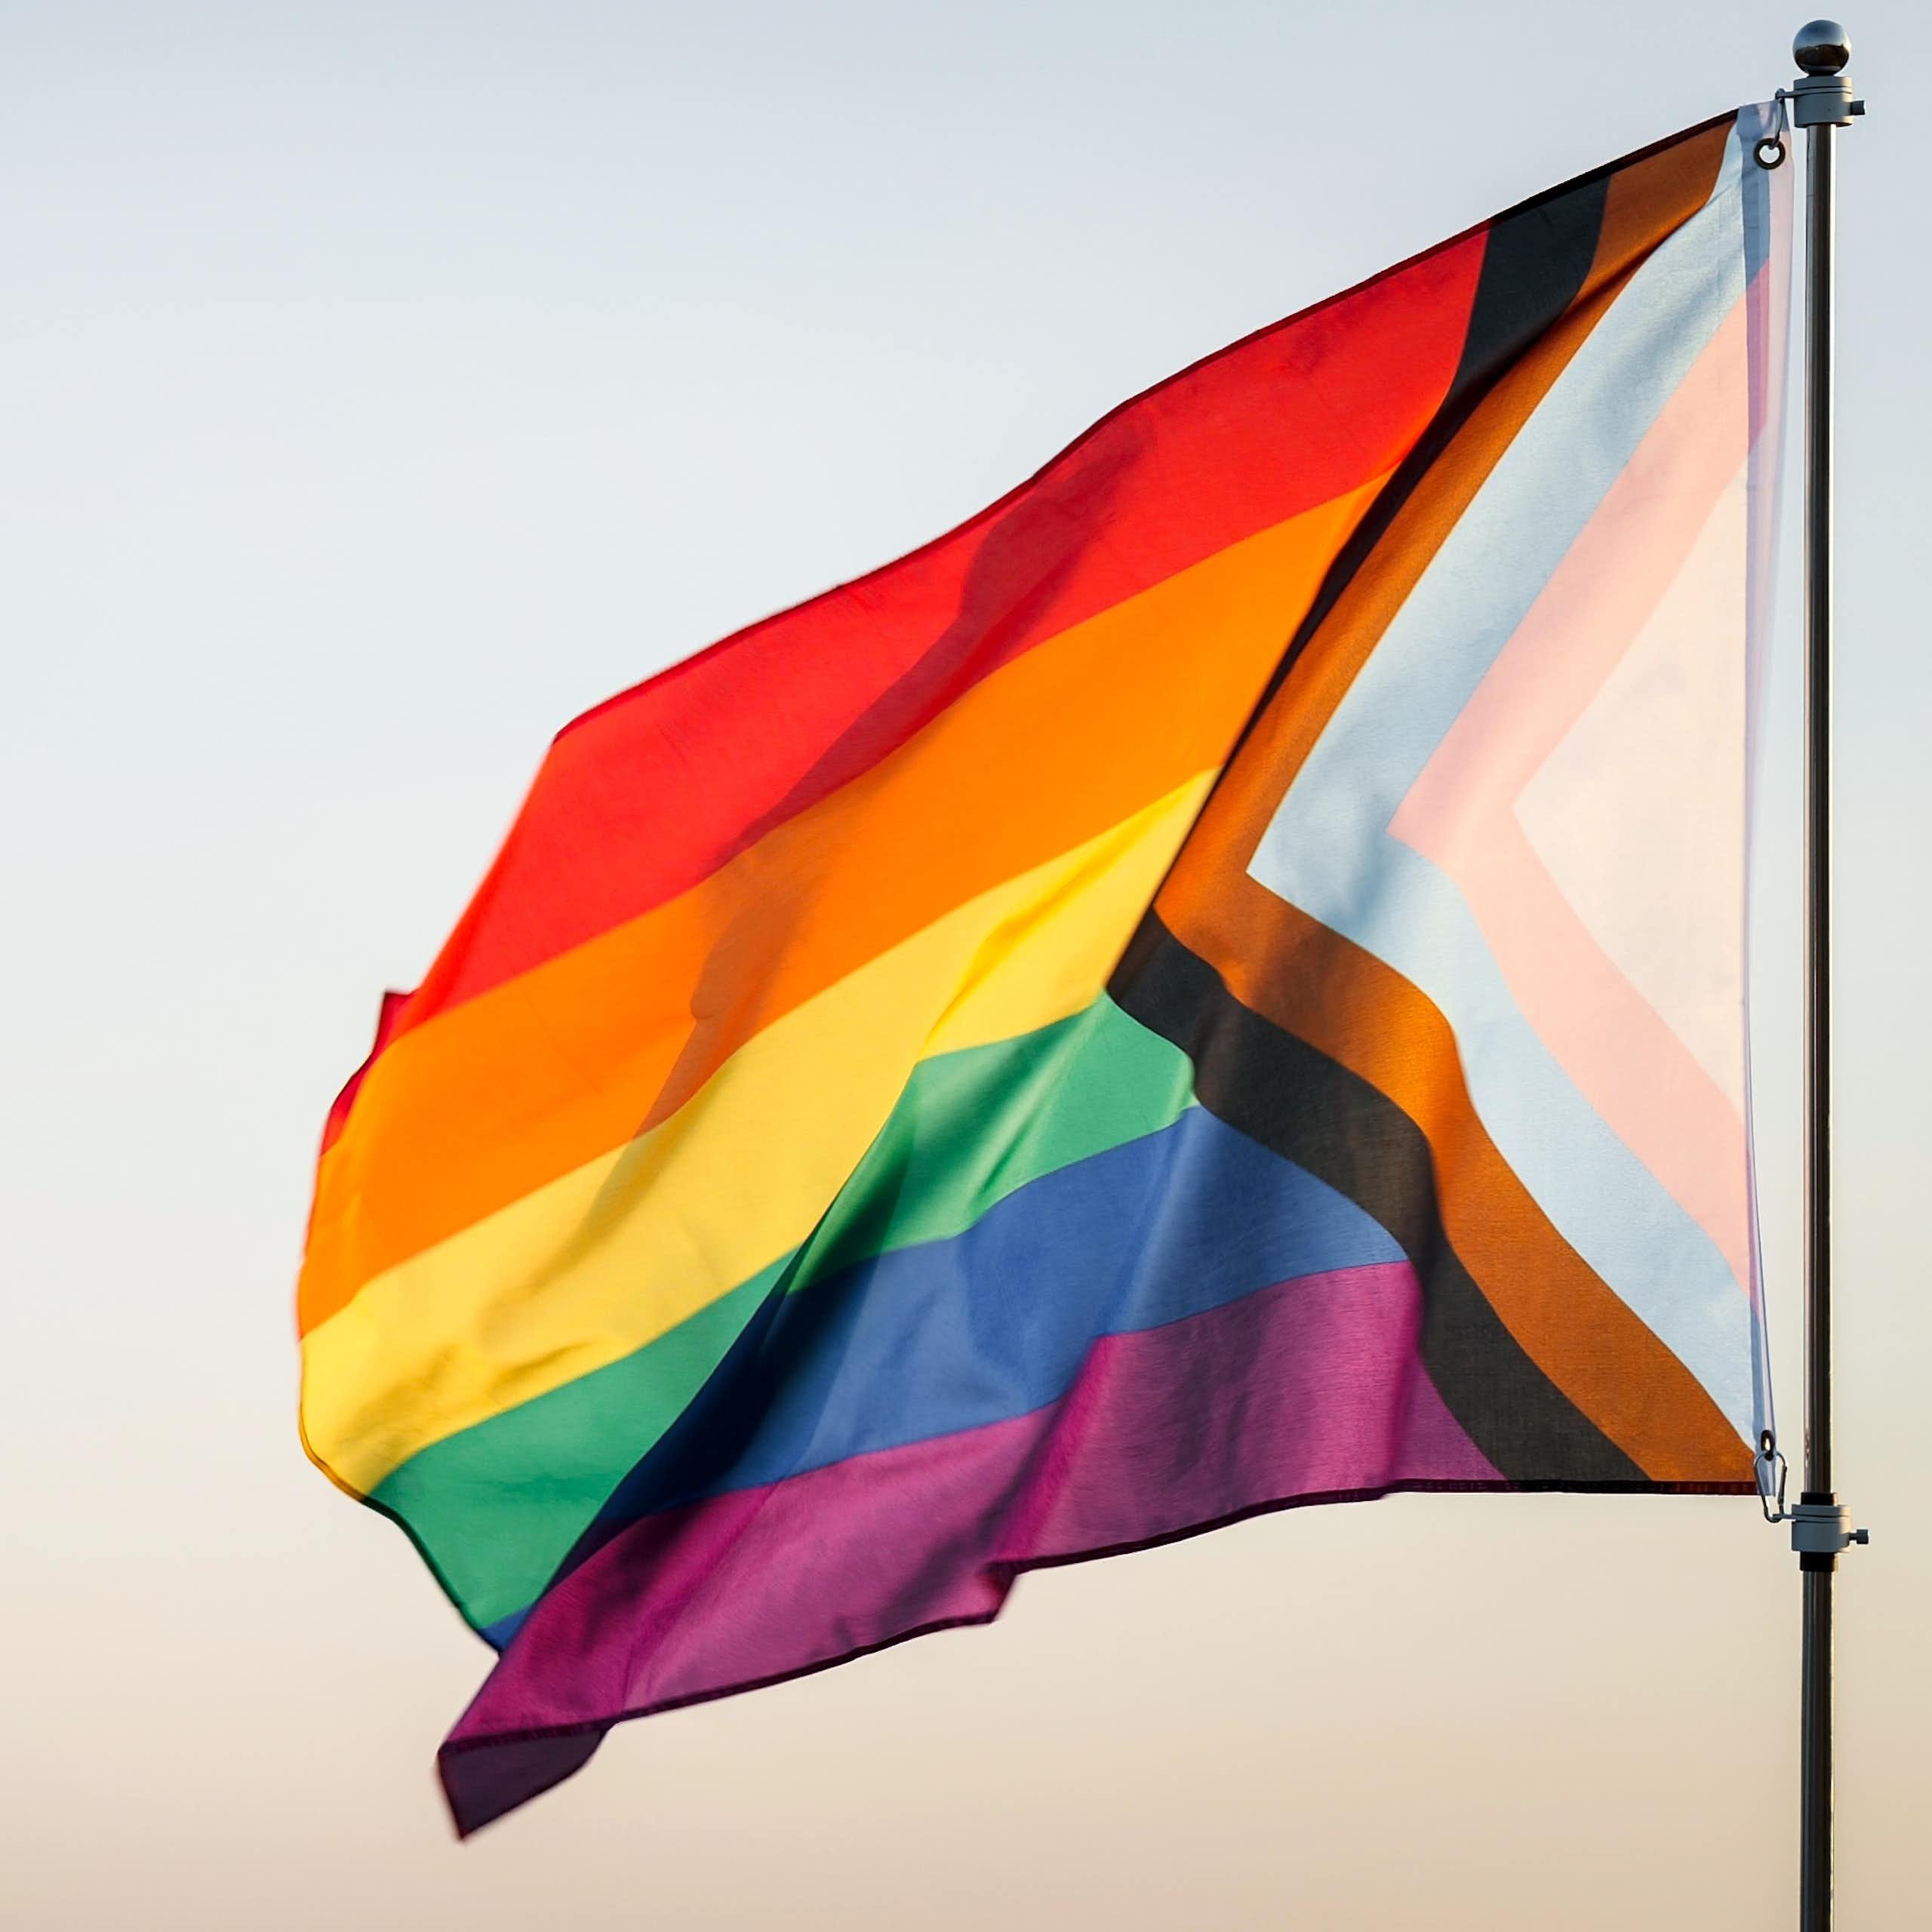 A rainbow flag on a pole